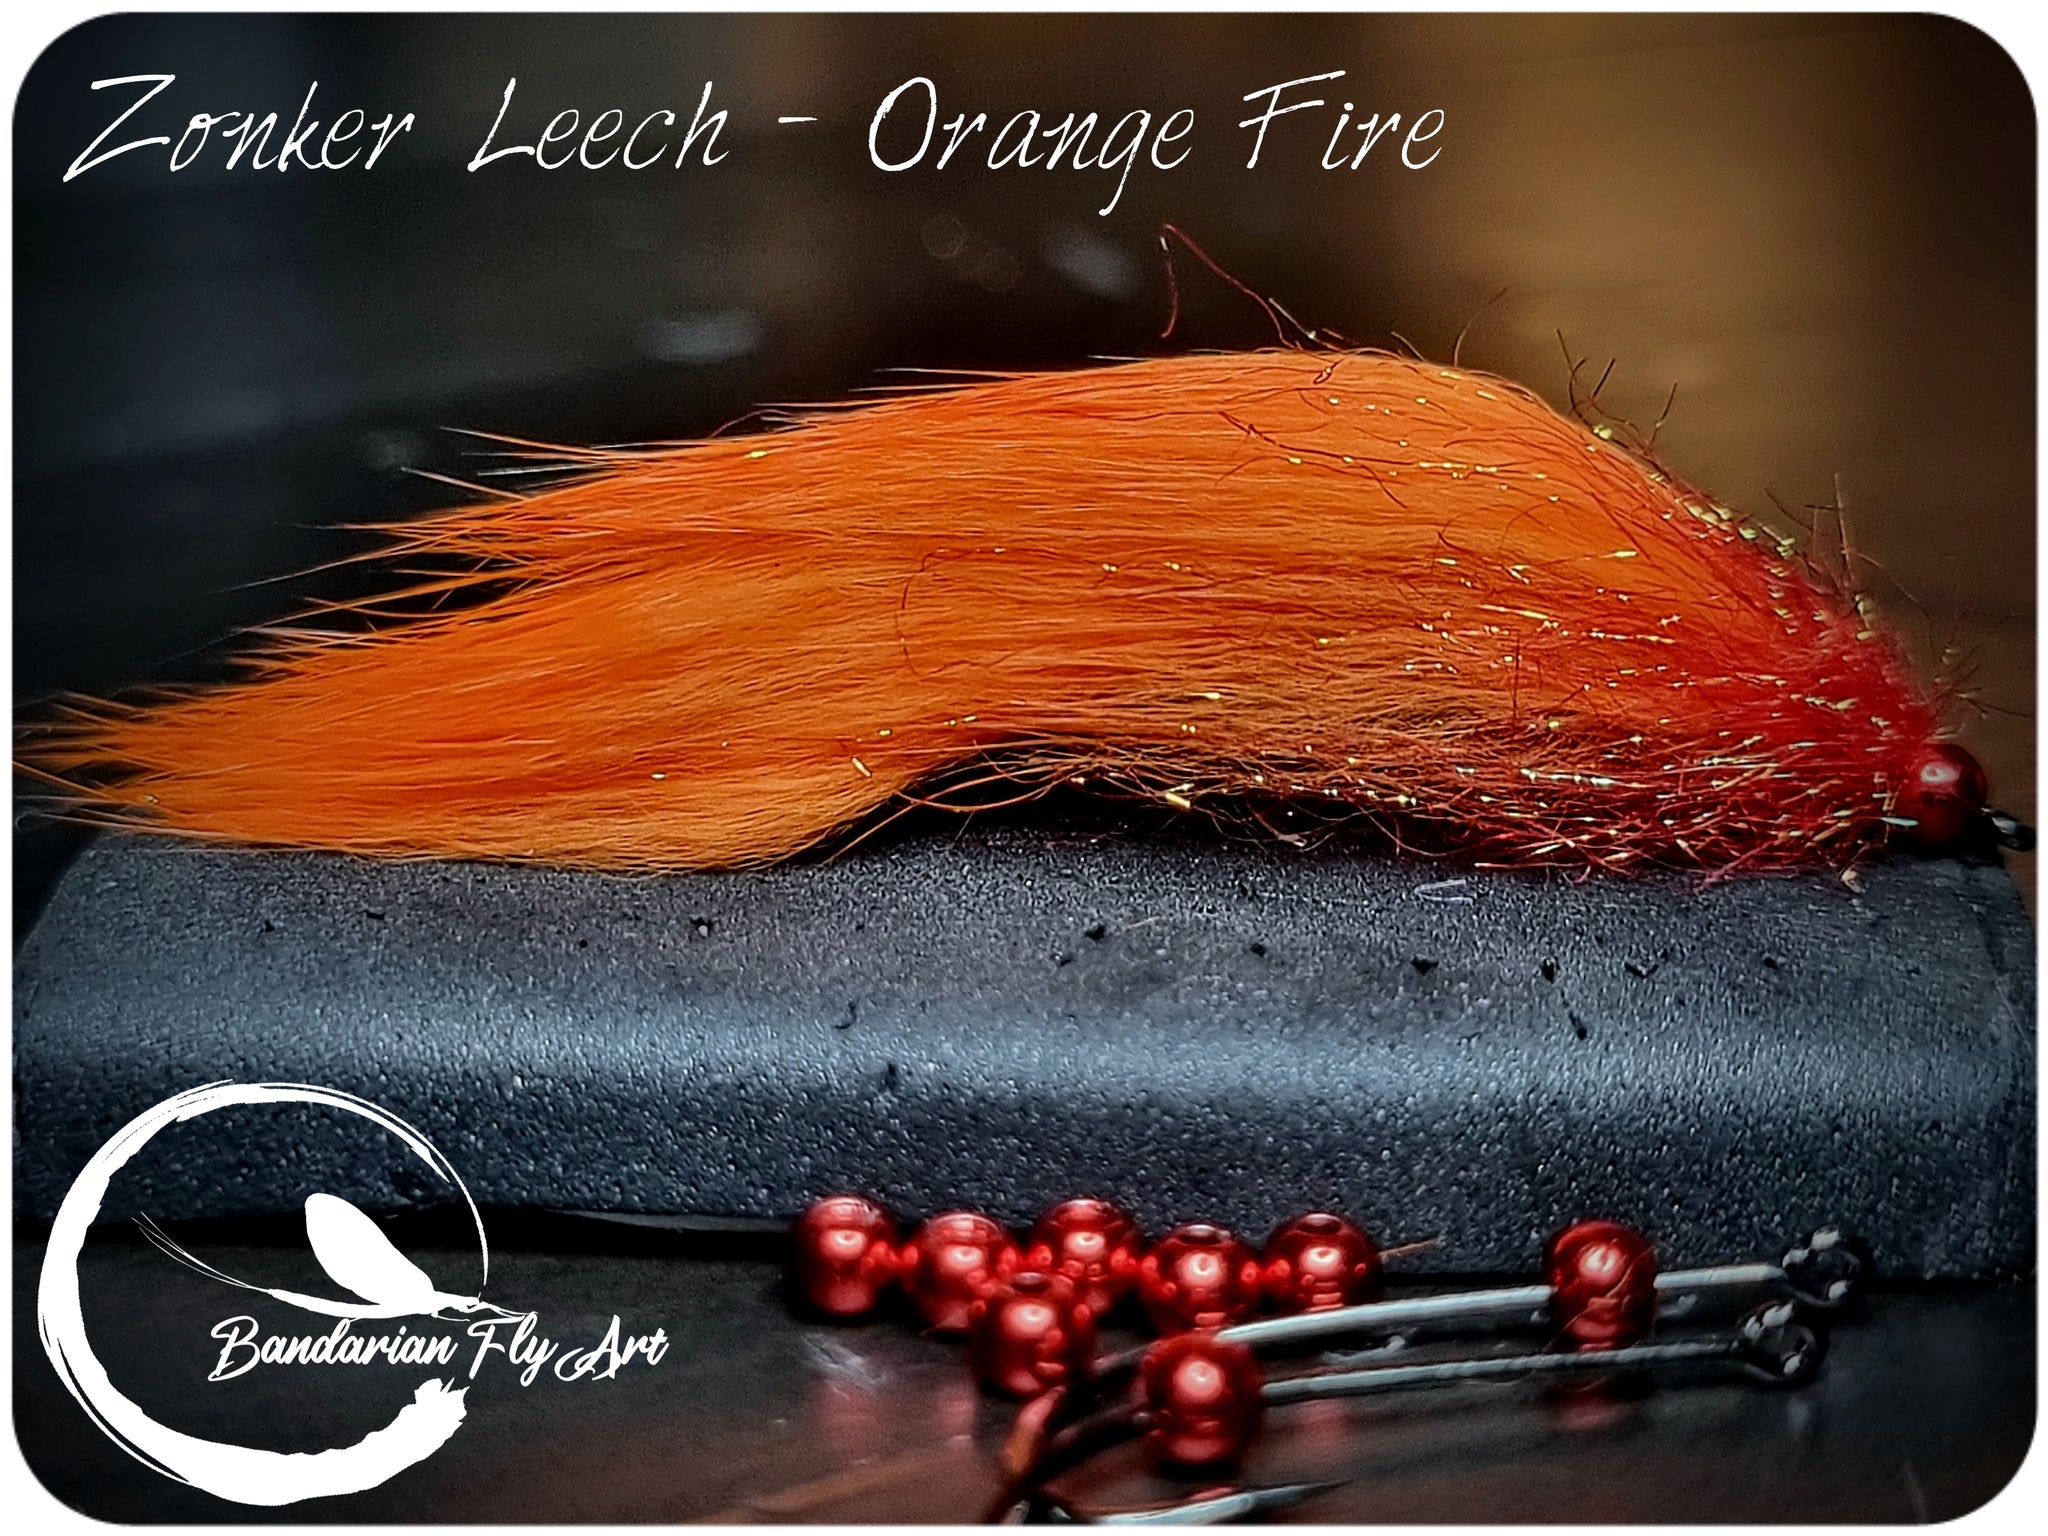 Zonker Leech - Orange Fire